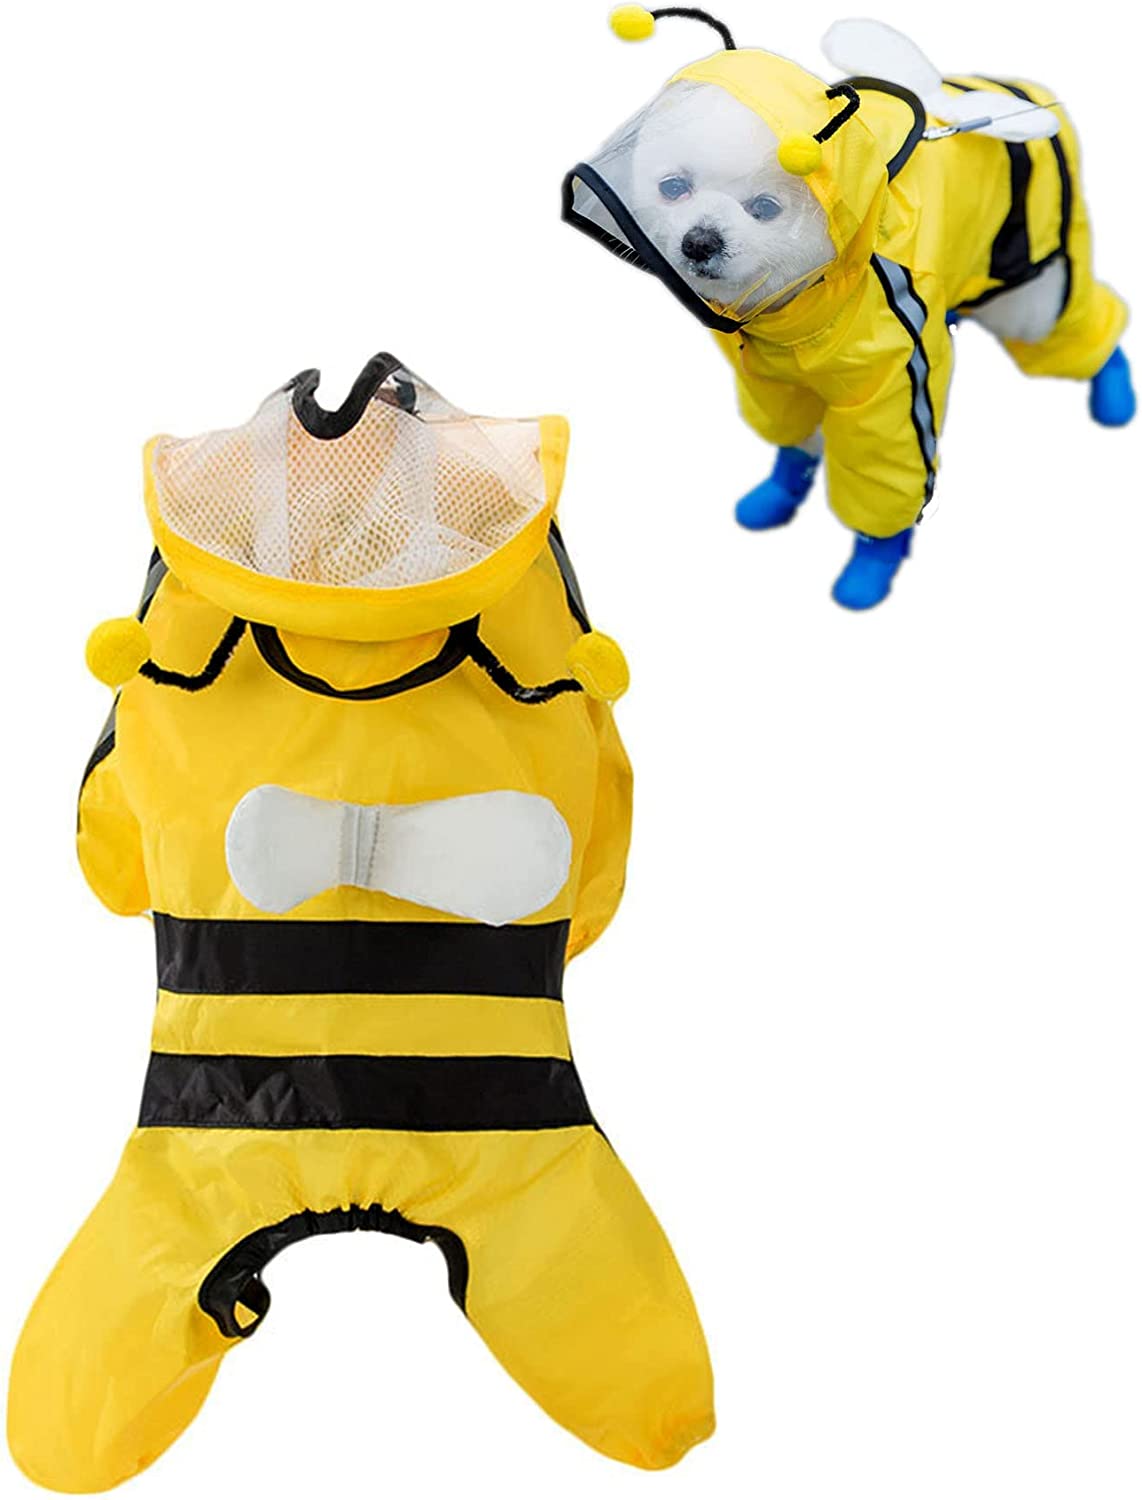 بارانی سگ، کت بارانی ژاکت ضدآب به شکل زنبور عسل، با پانچوی کلاهدار و نوار انعکاسی